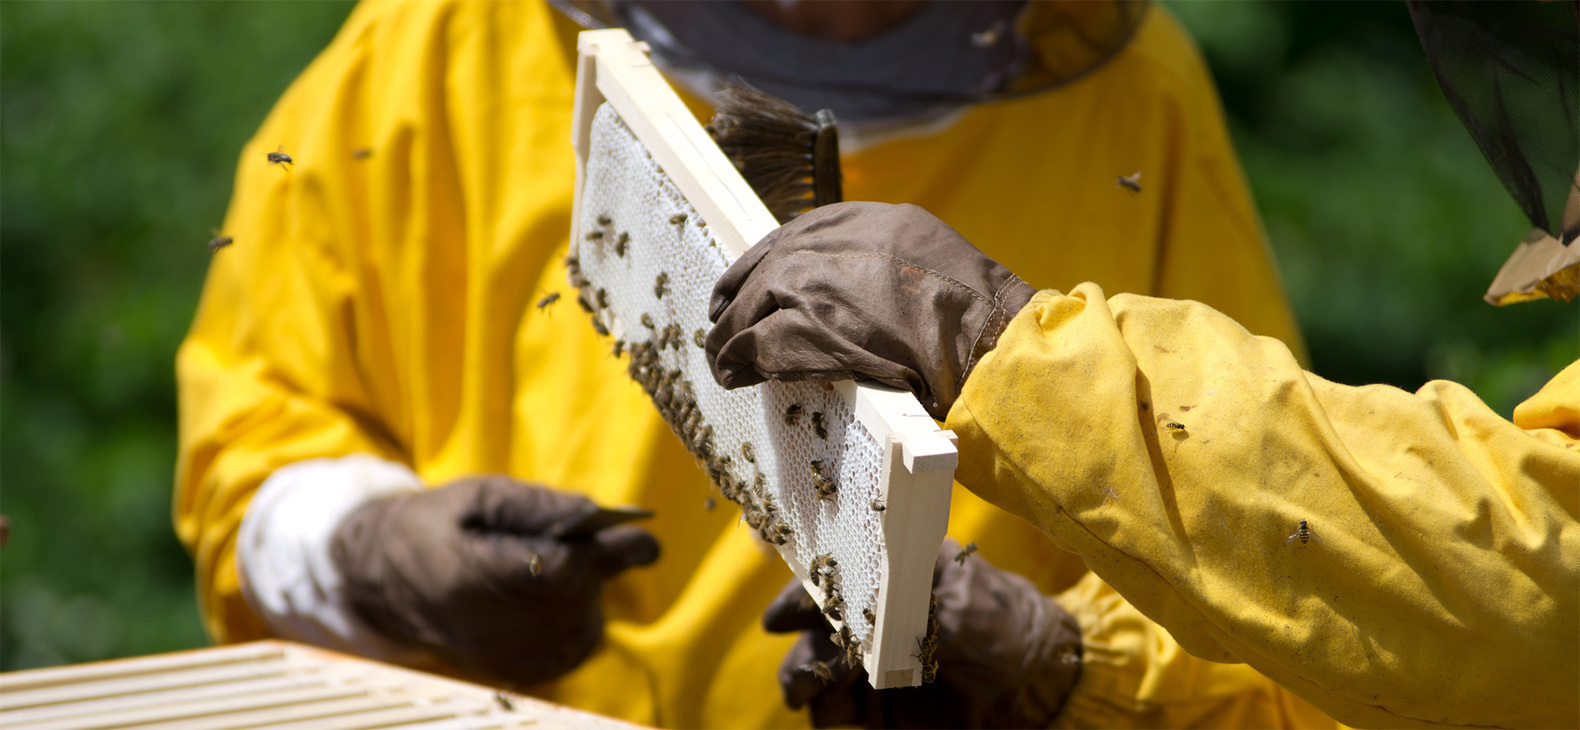 Imker bei der Arbeit: Von gelben Schutzanzügen, Imkerhhauben und braunen Handschuhen geschützt holen zwei Imker eine Bienenwabe aus dem Kasten.